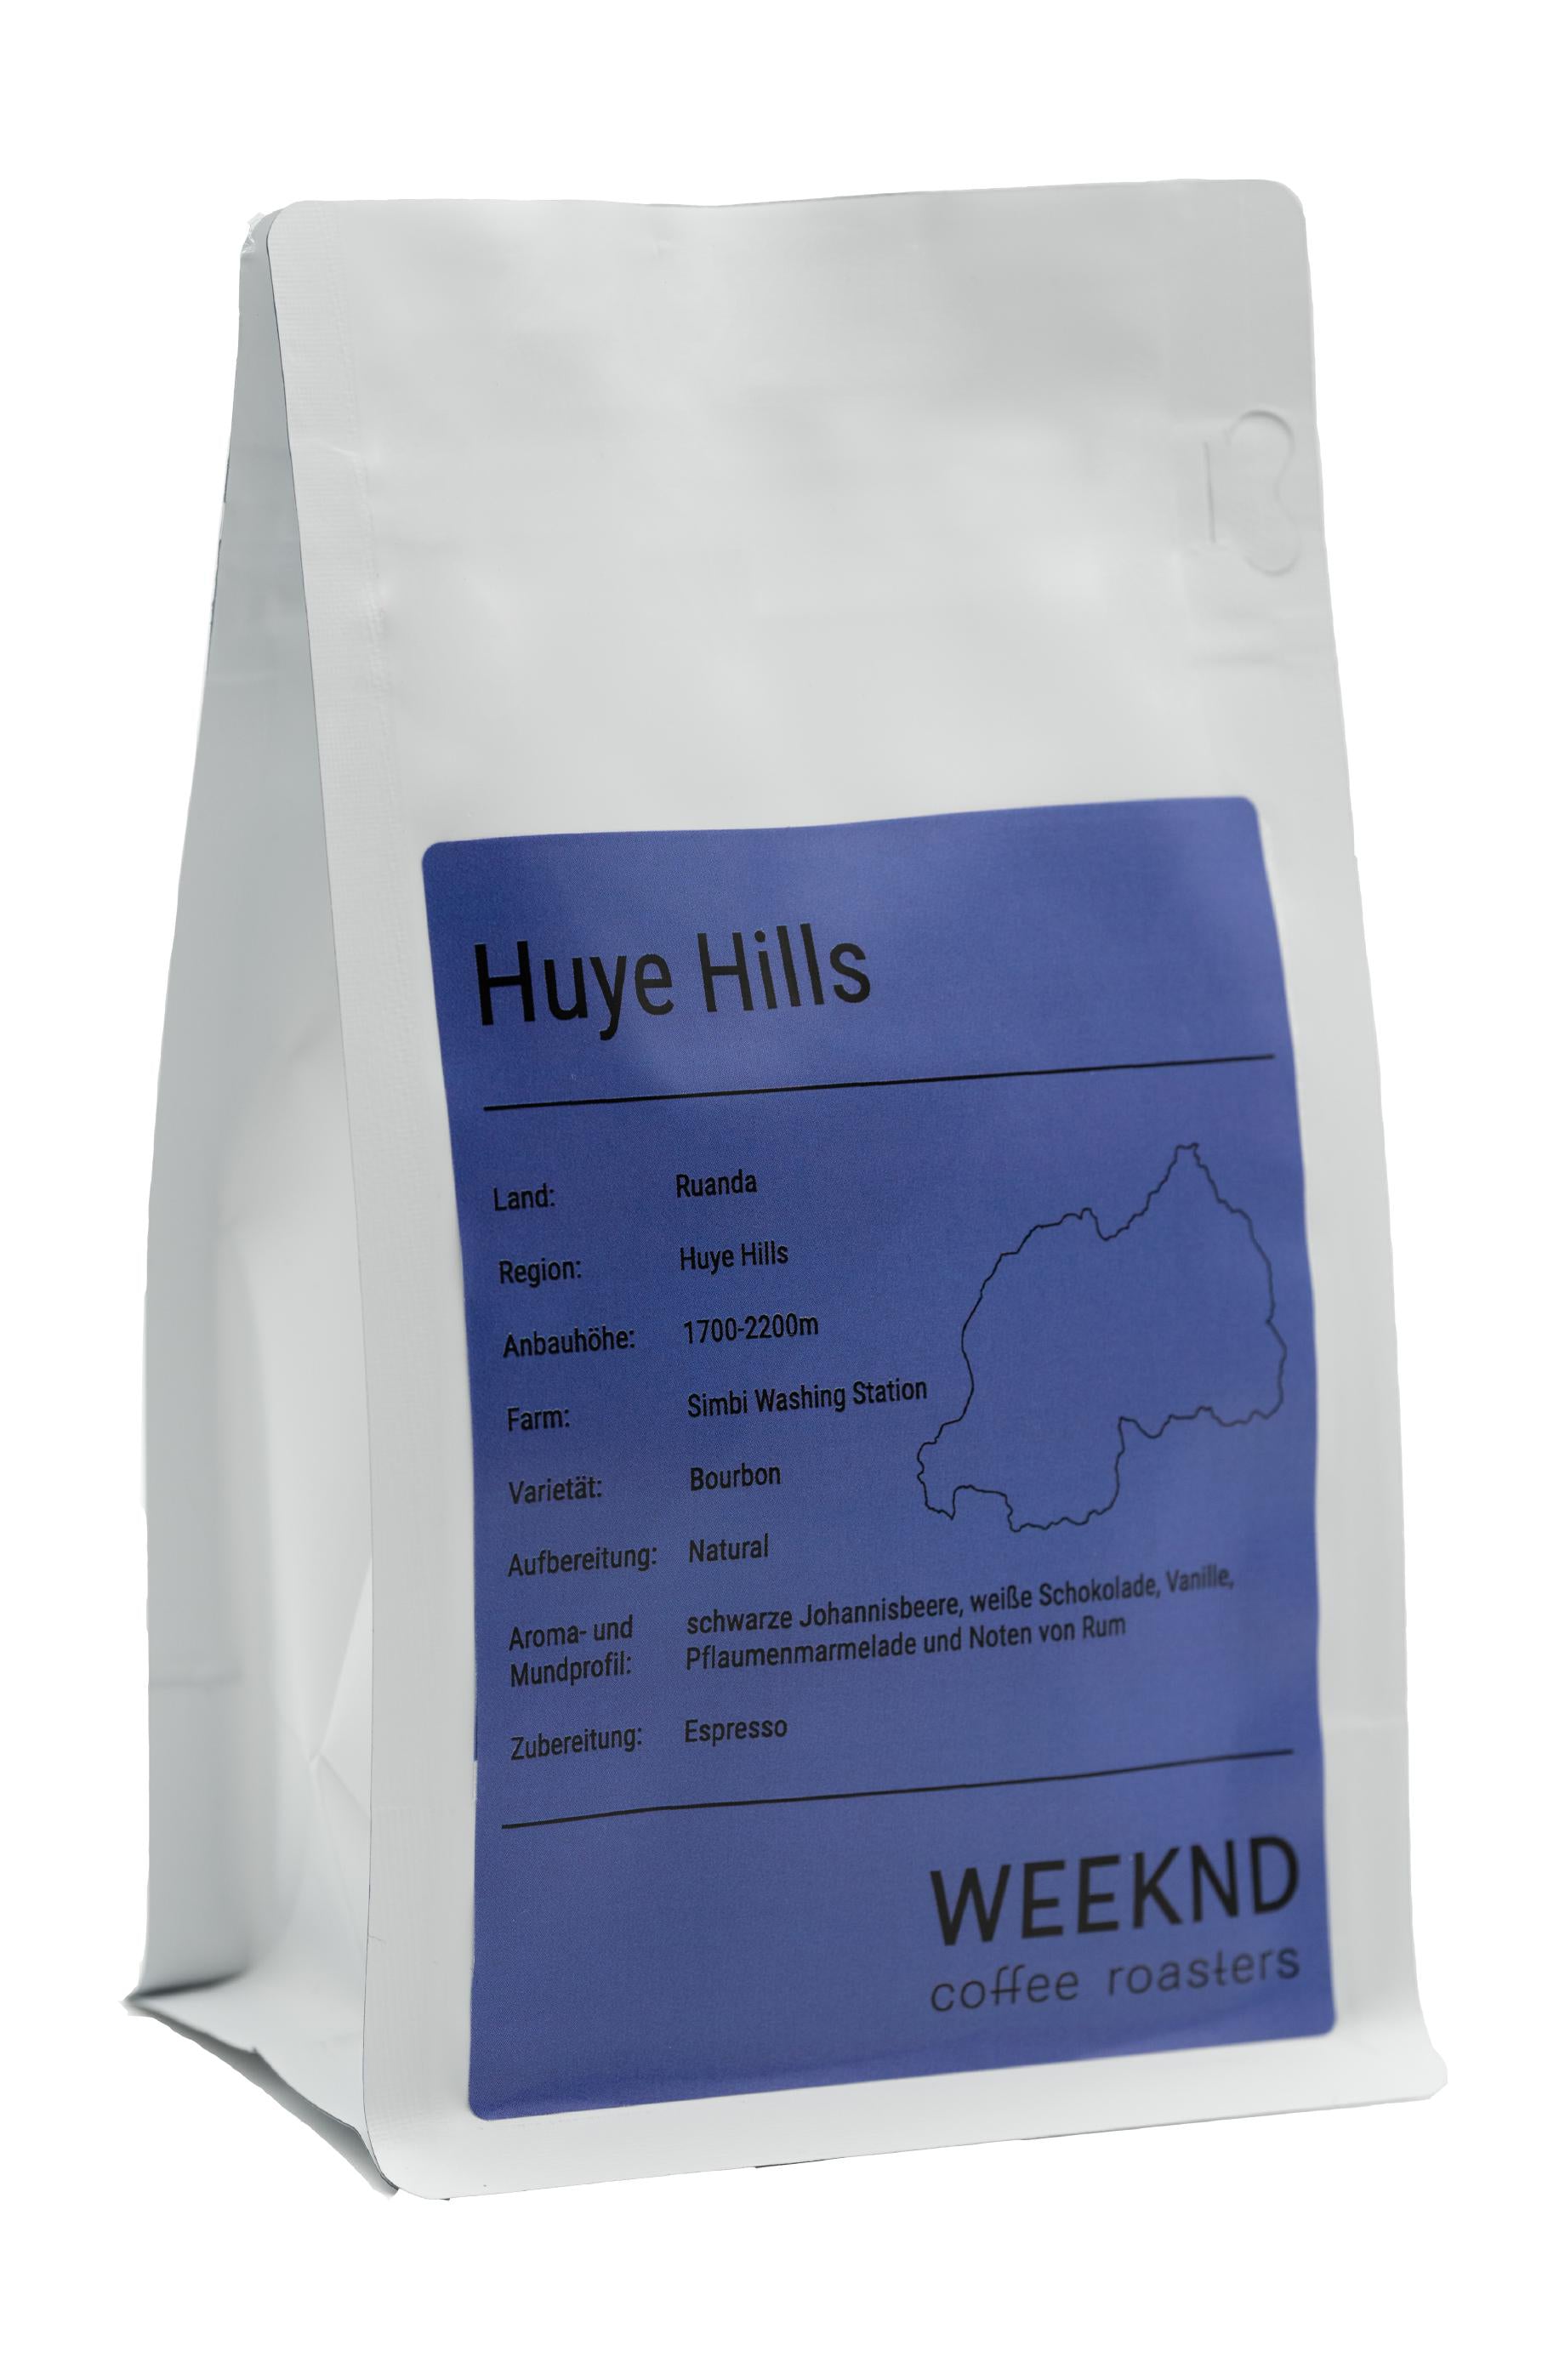 Huye Hills, ein herausragender Kaffee aus Ruanda, bekannt für seine lebendigen Zitrusnoten und süßen Beerenaromen - entdecke diesen besonderen afrikanischen Kaffee in unserer Kaffeerösterei